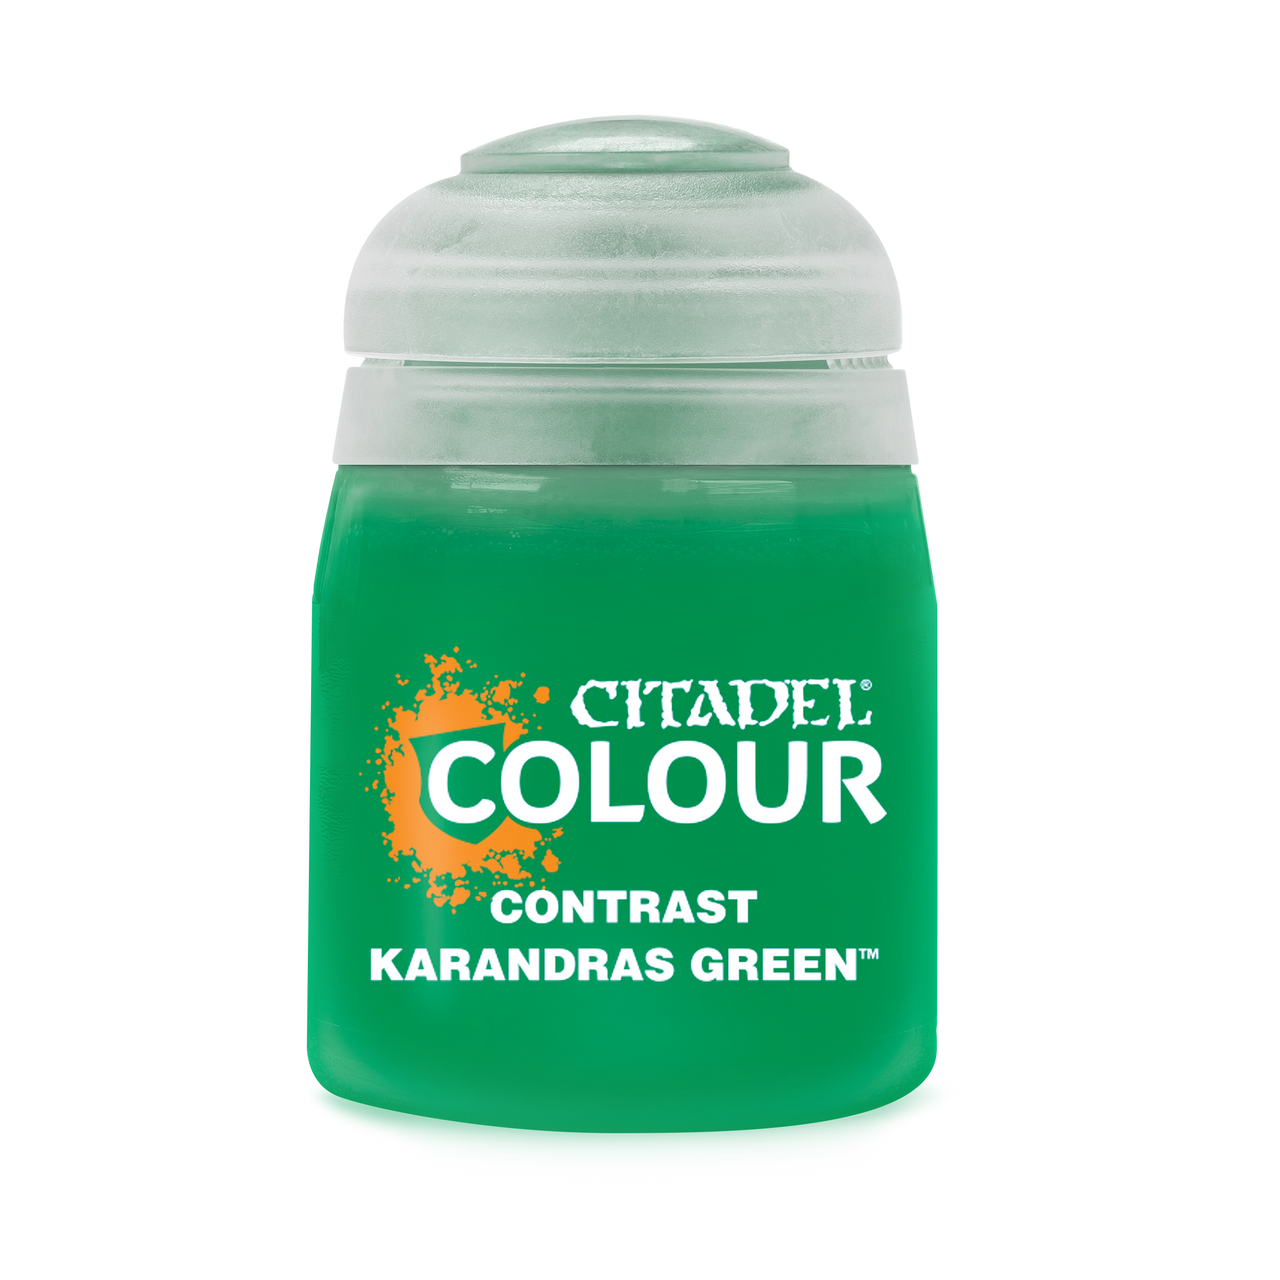 Citadel Contrast: Karandras Green